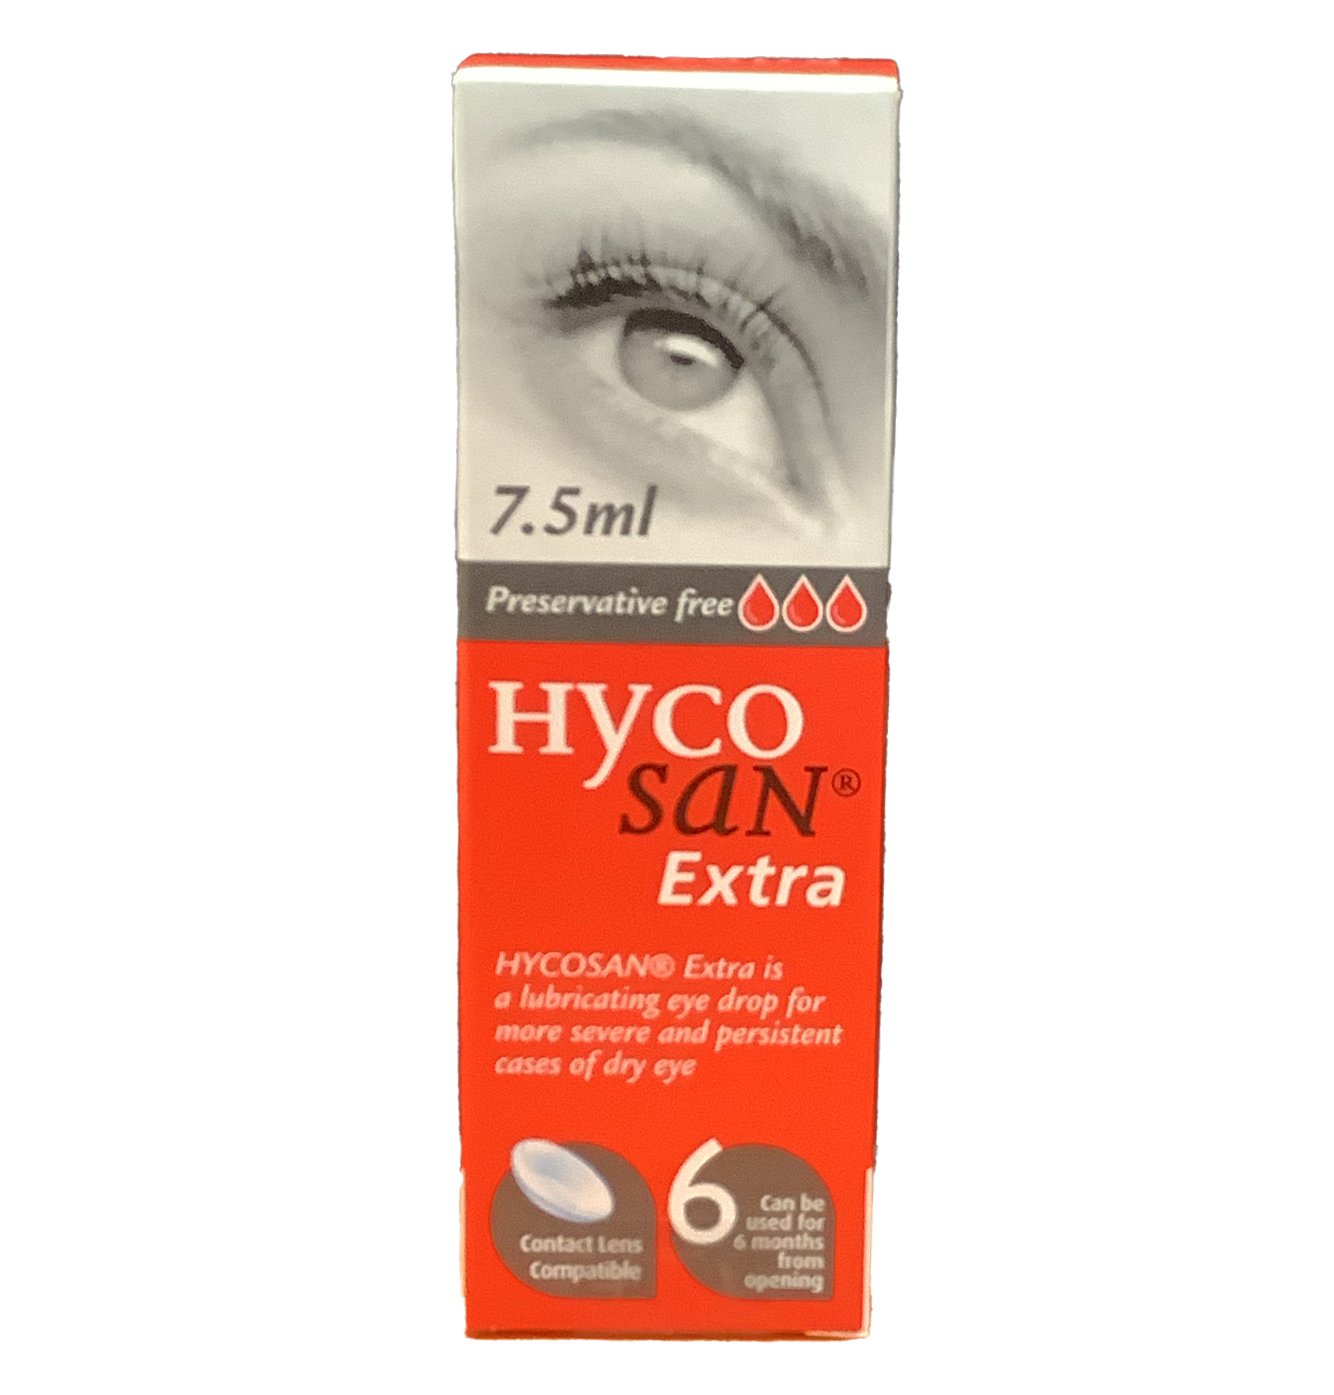 HYCOSAN® Extra